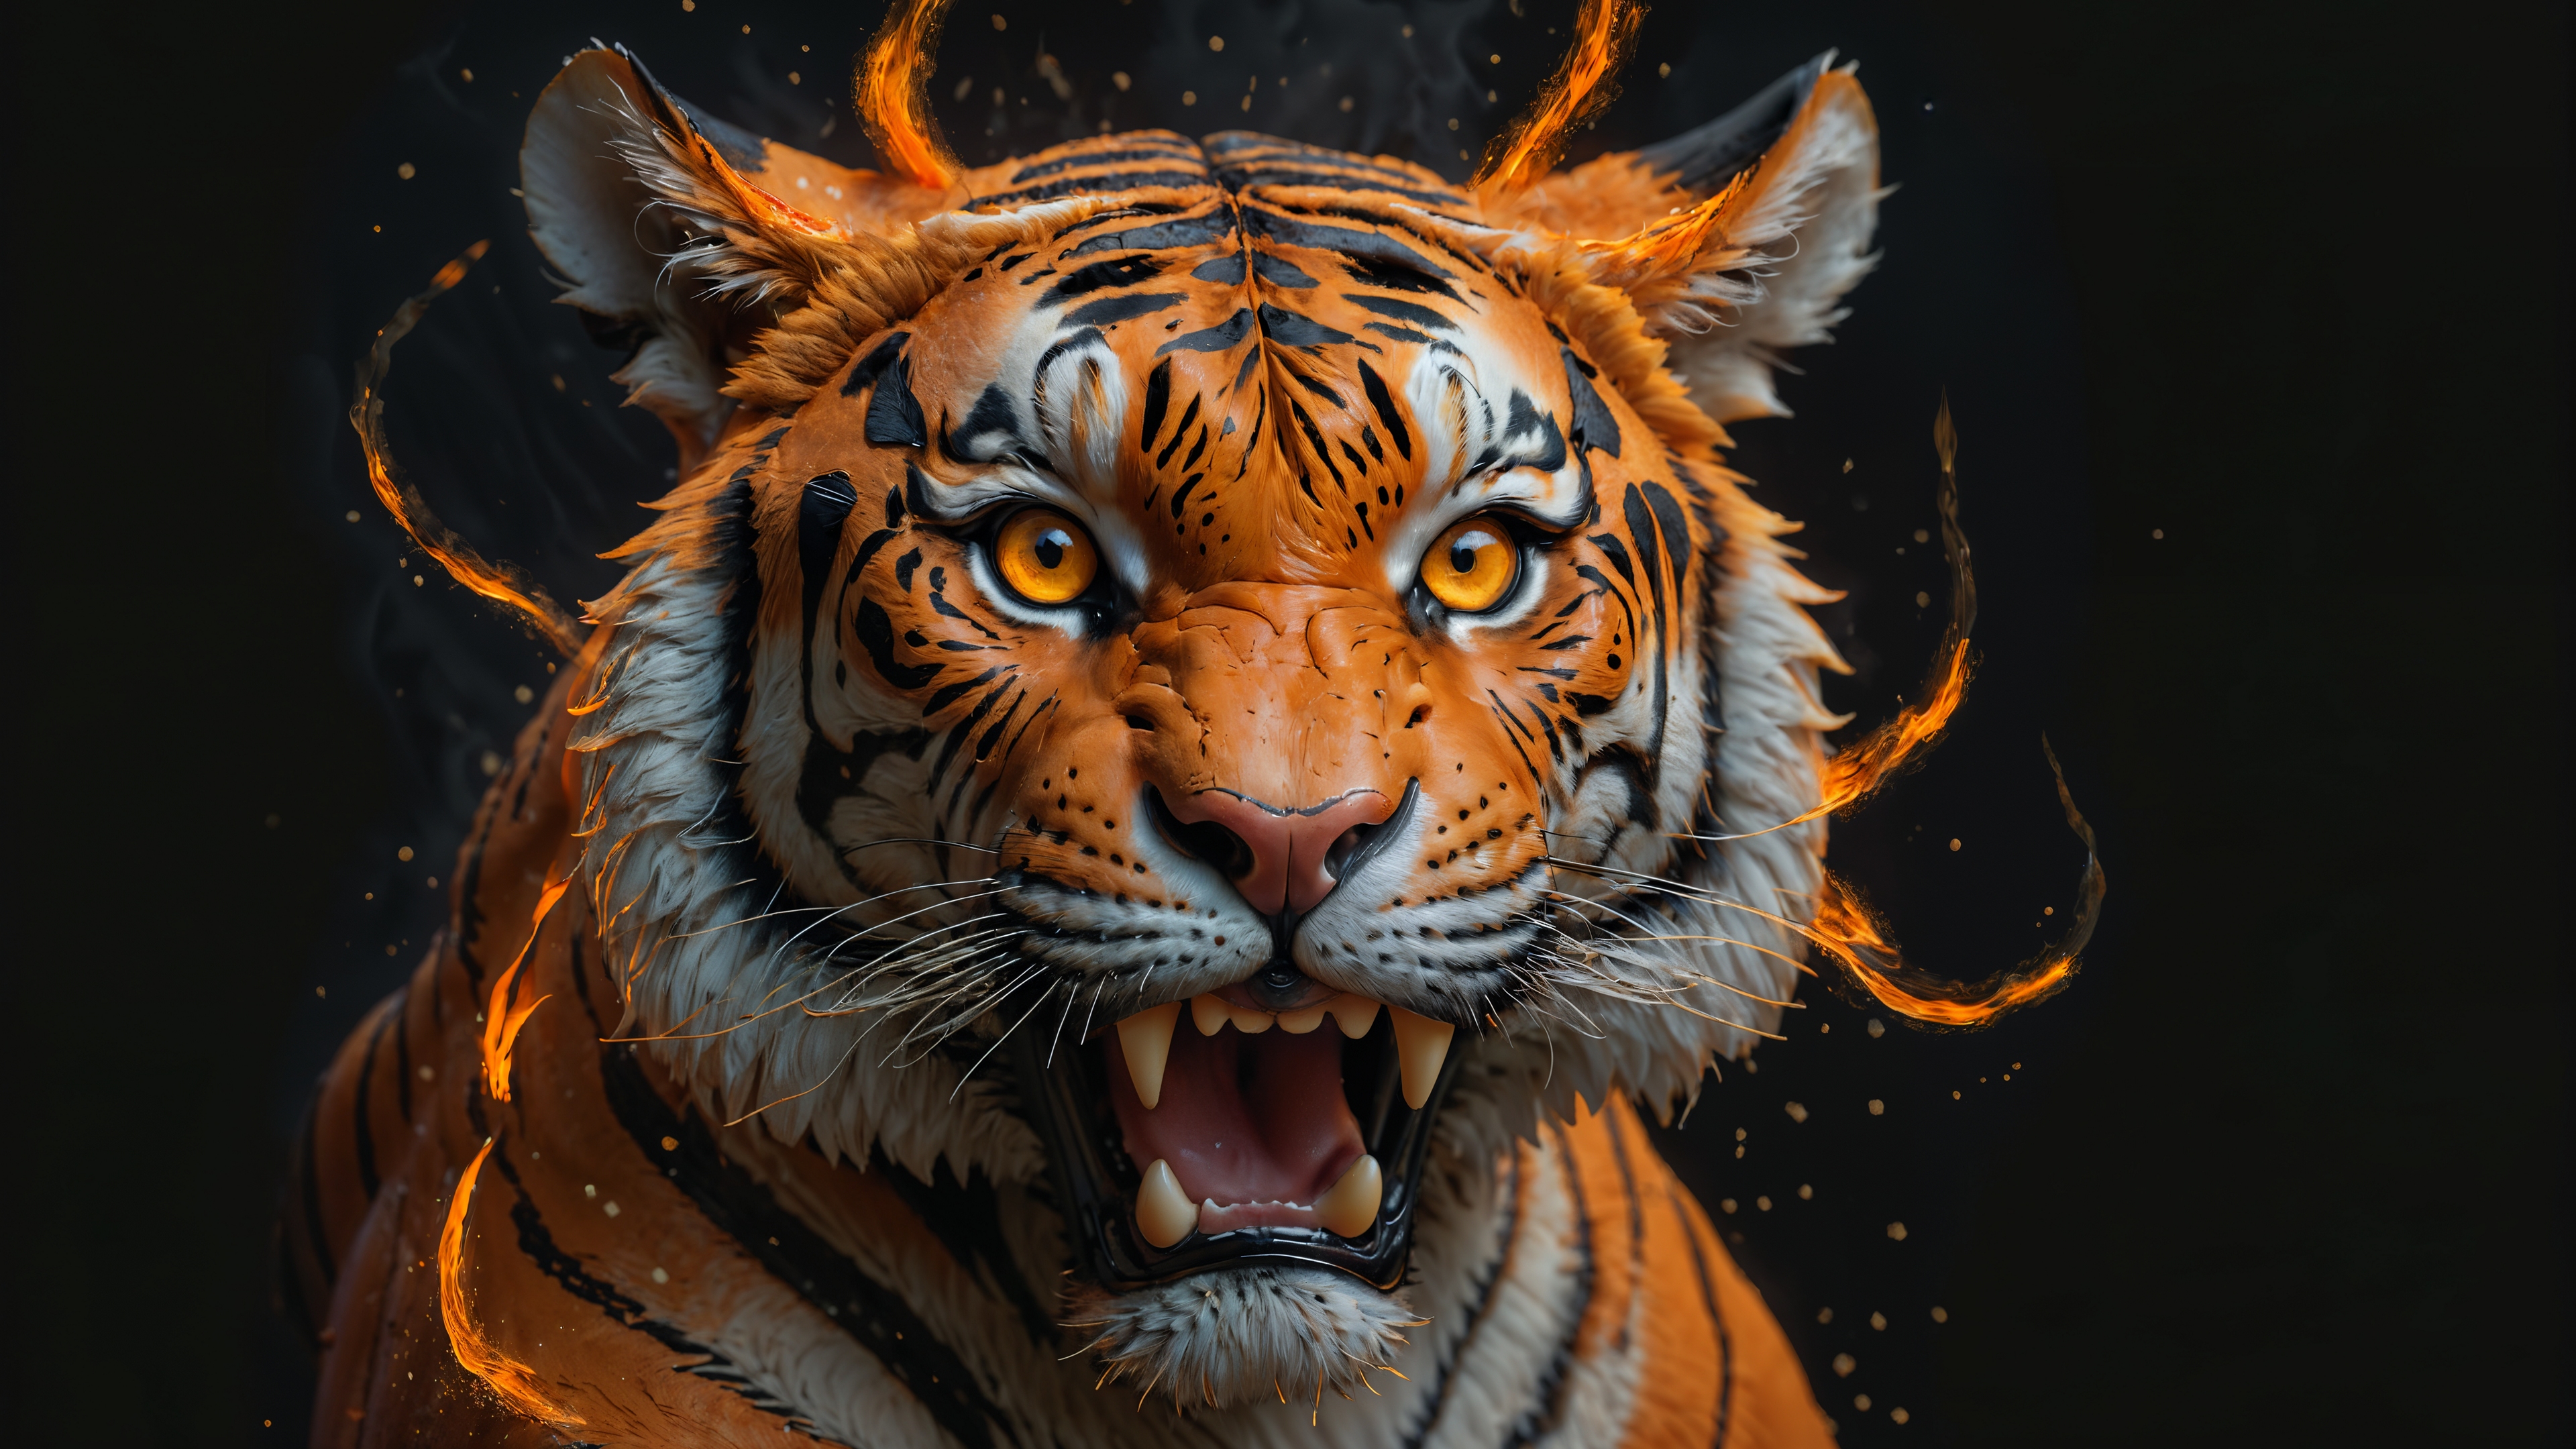 Бесплатное фото Горящая голова тигра